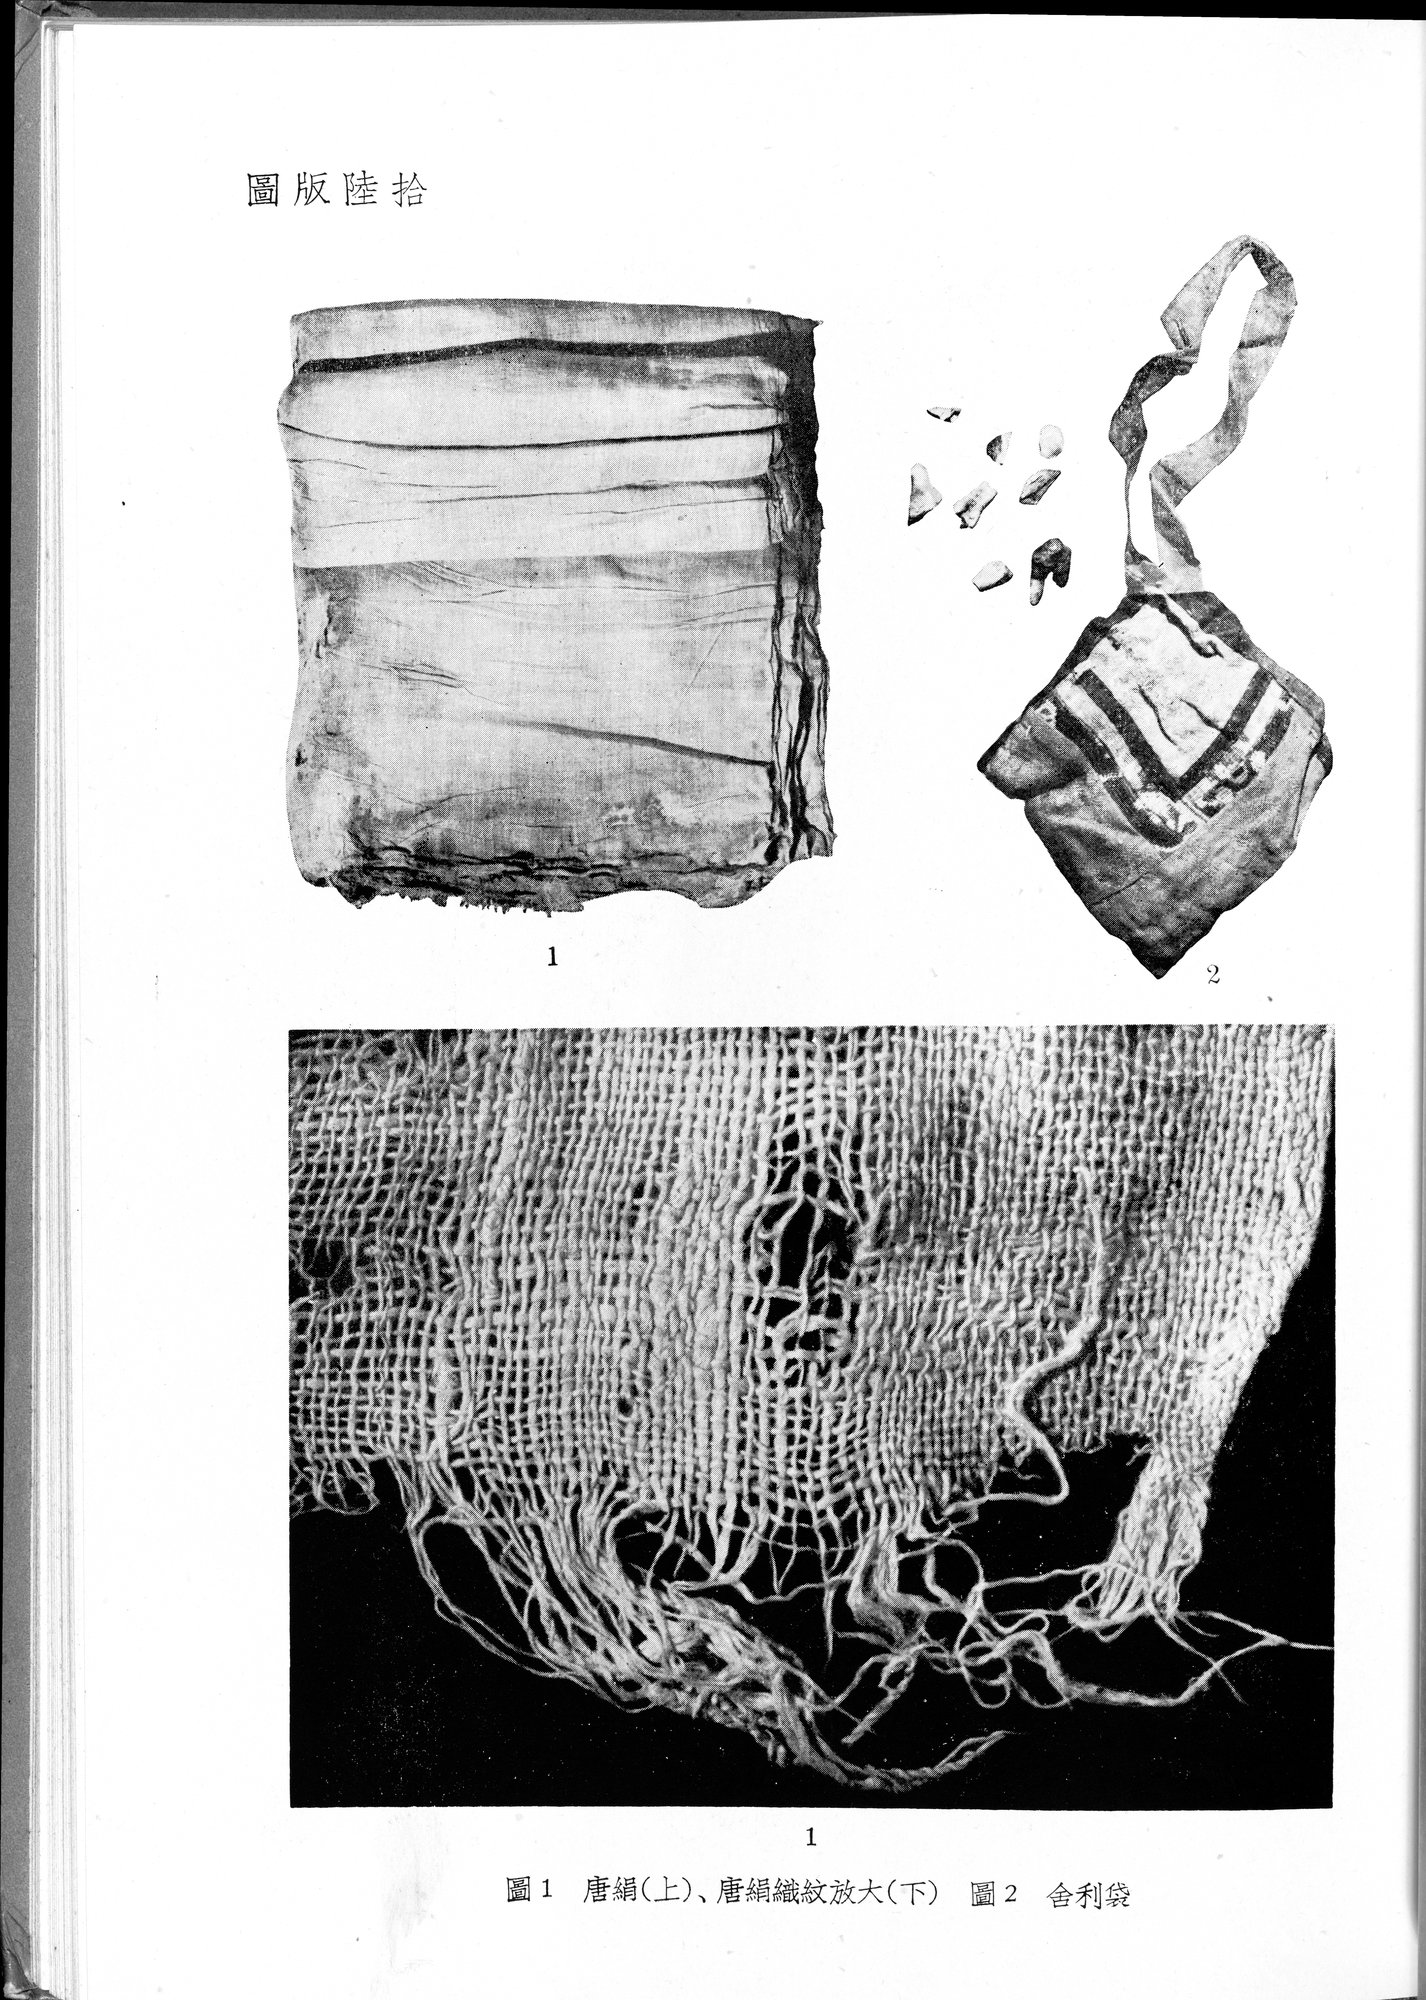 塔里木盆地考古記 : vol.1 / 287 ページ（白黒高解像度画像）